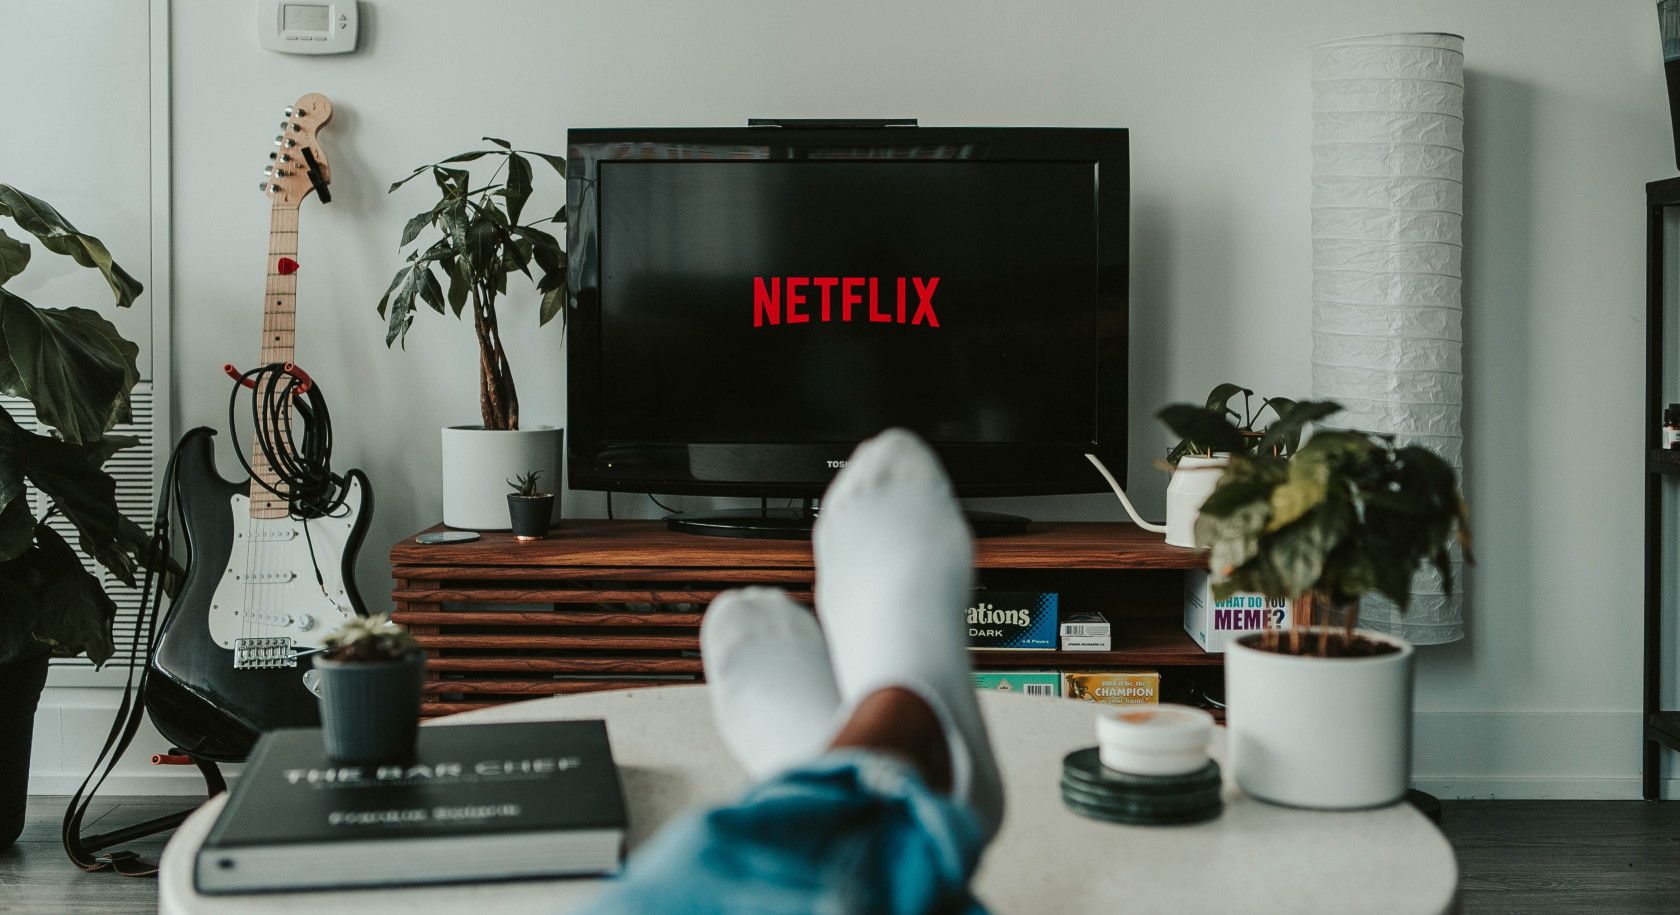 Pria dengan kaki di atas meja kopi menonton Netflix di TV